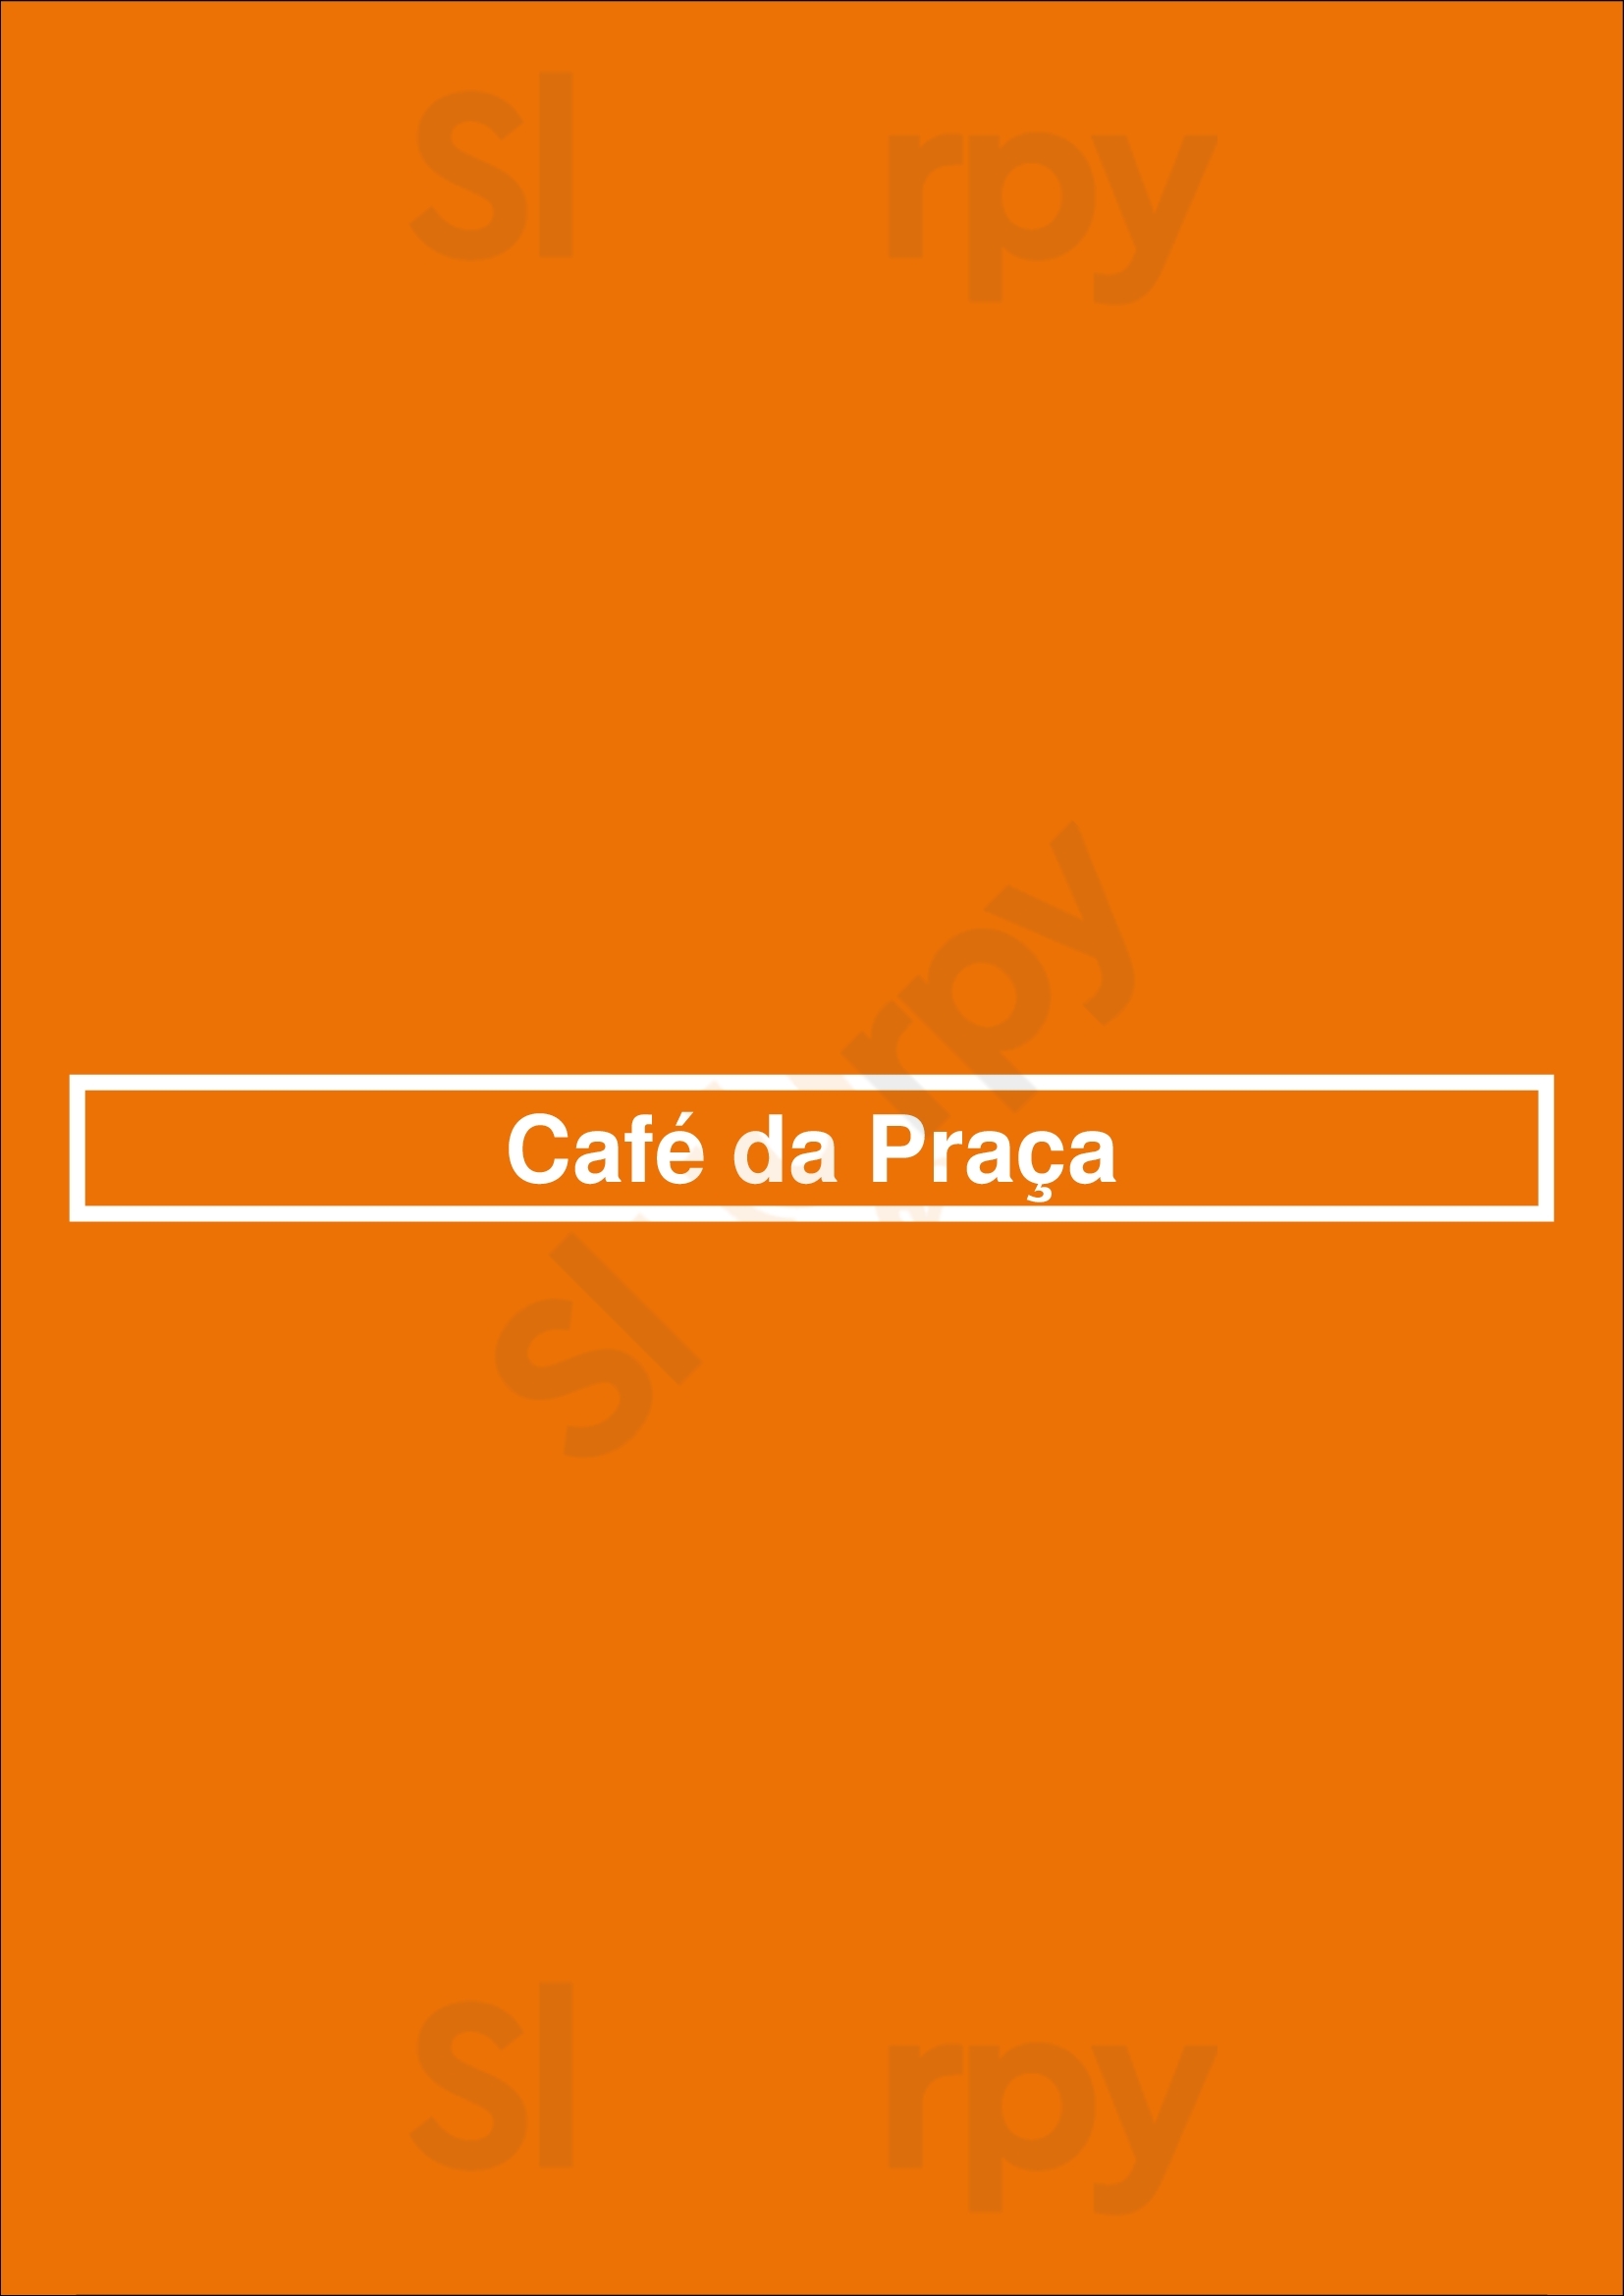 Café Da Praça Matosinhos Menu - 1